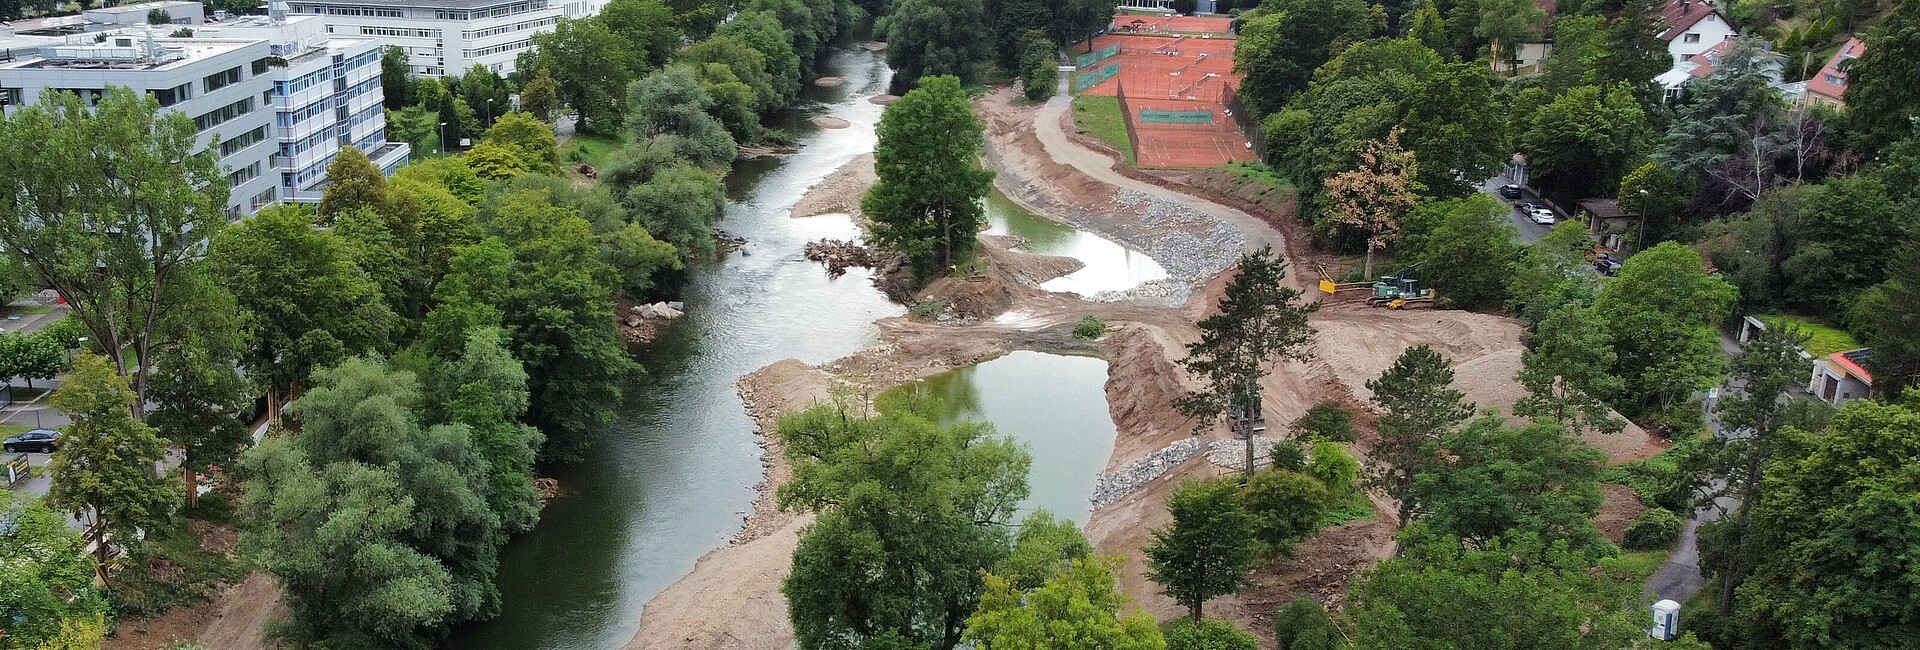 Blick auf die Baustelle mit dem Neckar